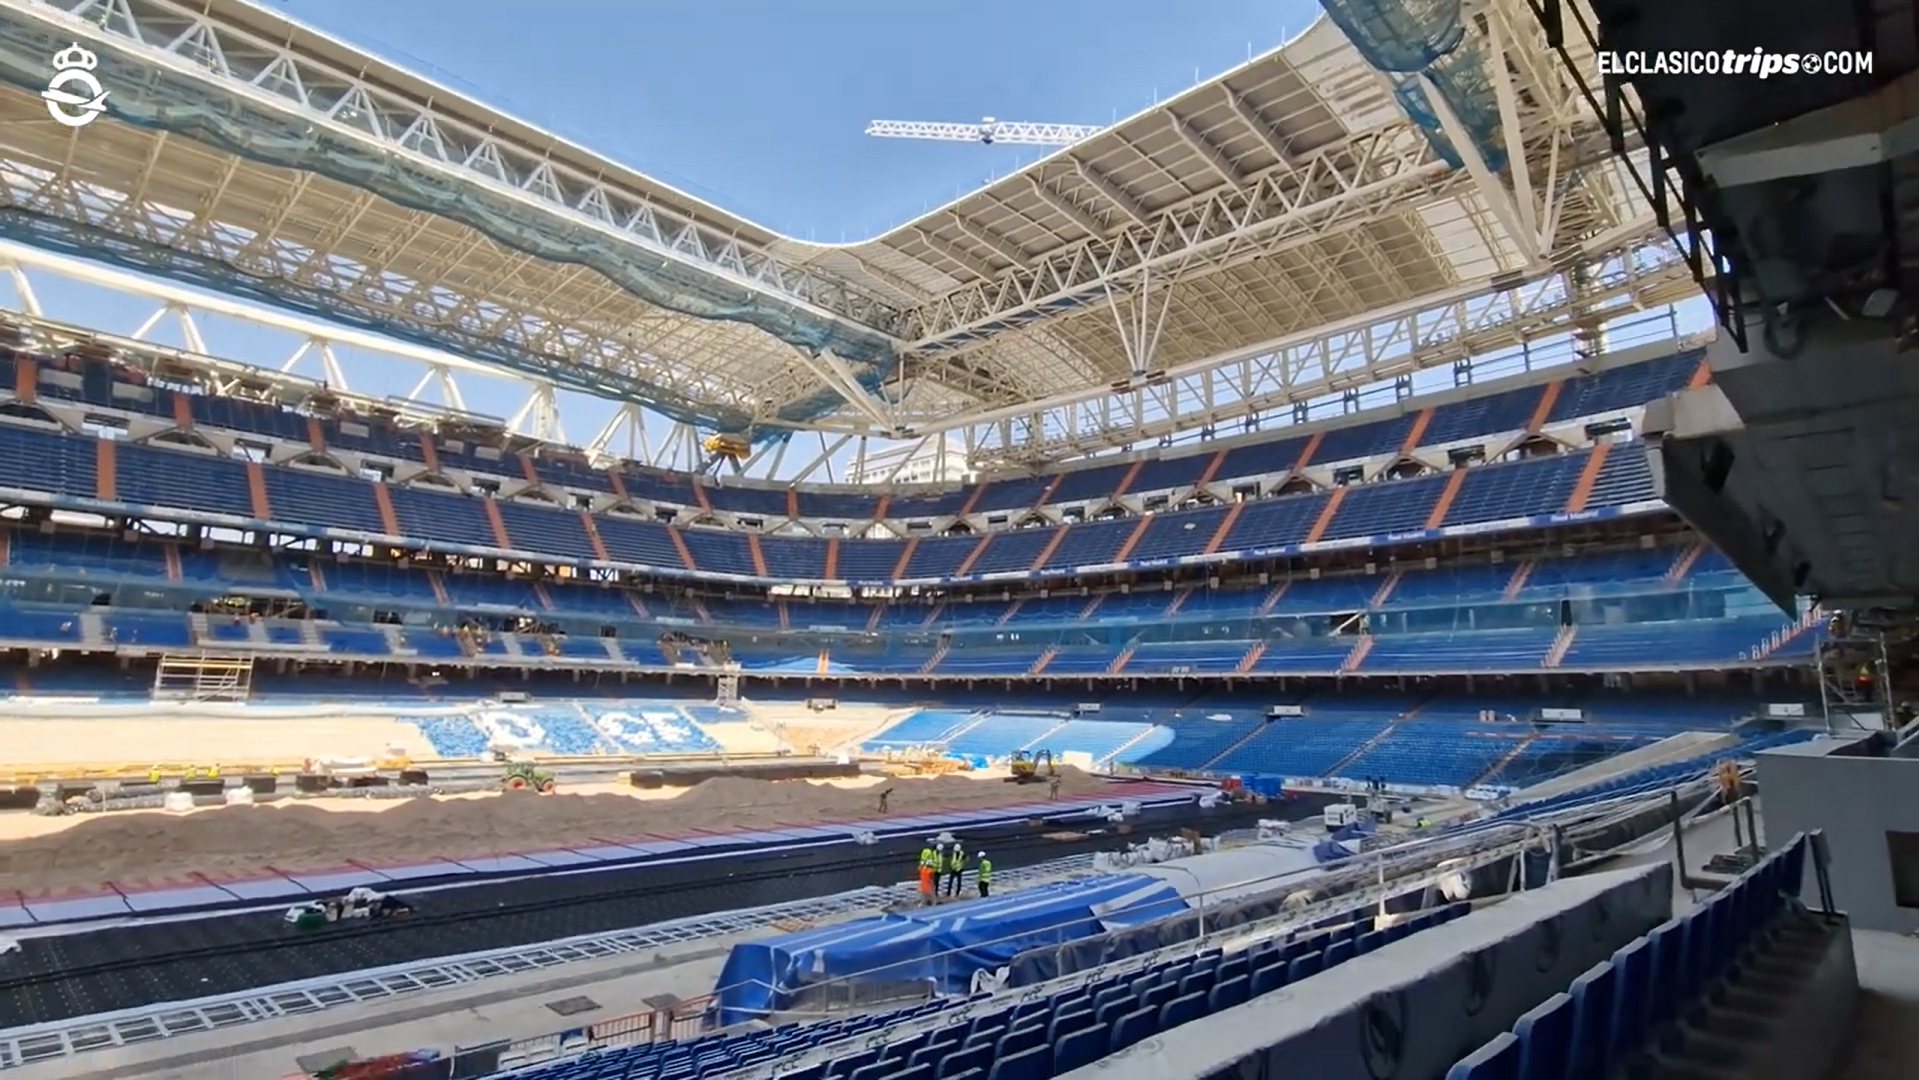 Ruhau integra su sistema de climatización radiante en el innovador césped retráctil del nuevo estadio Santiago Bernabéu